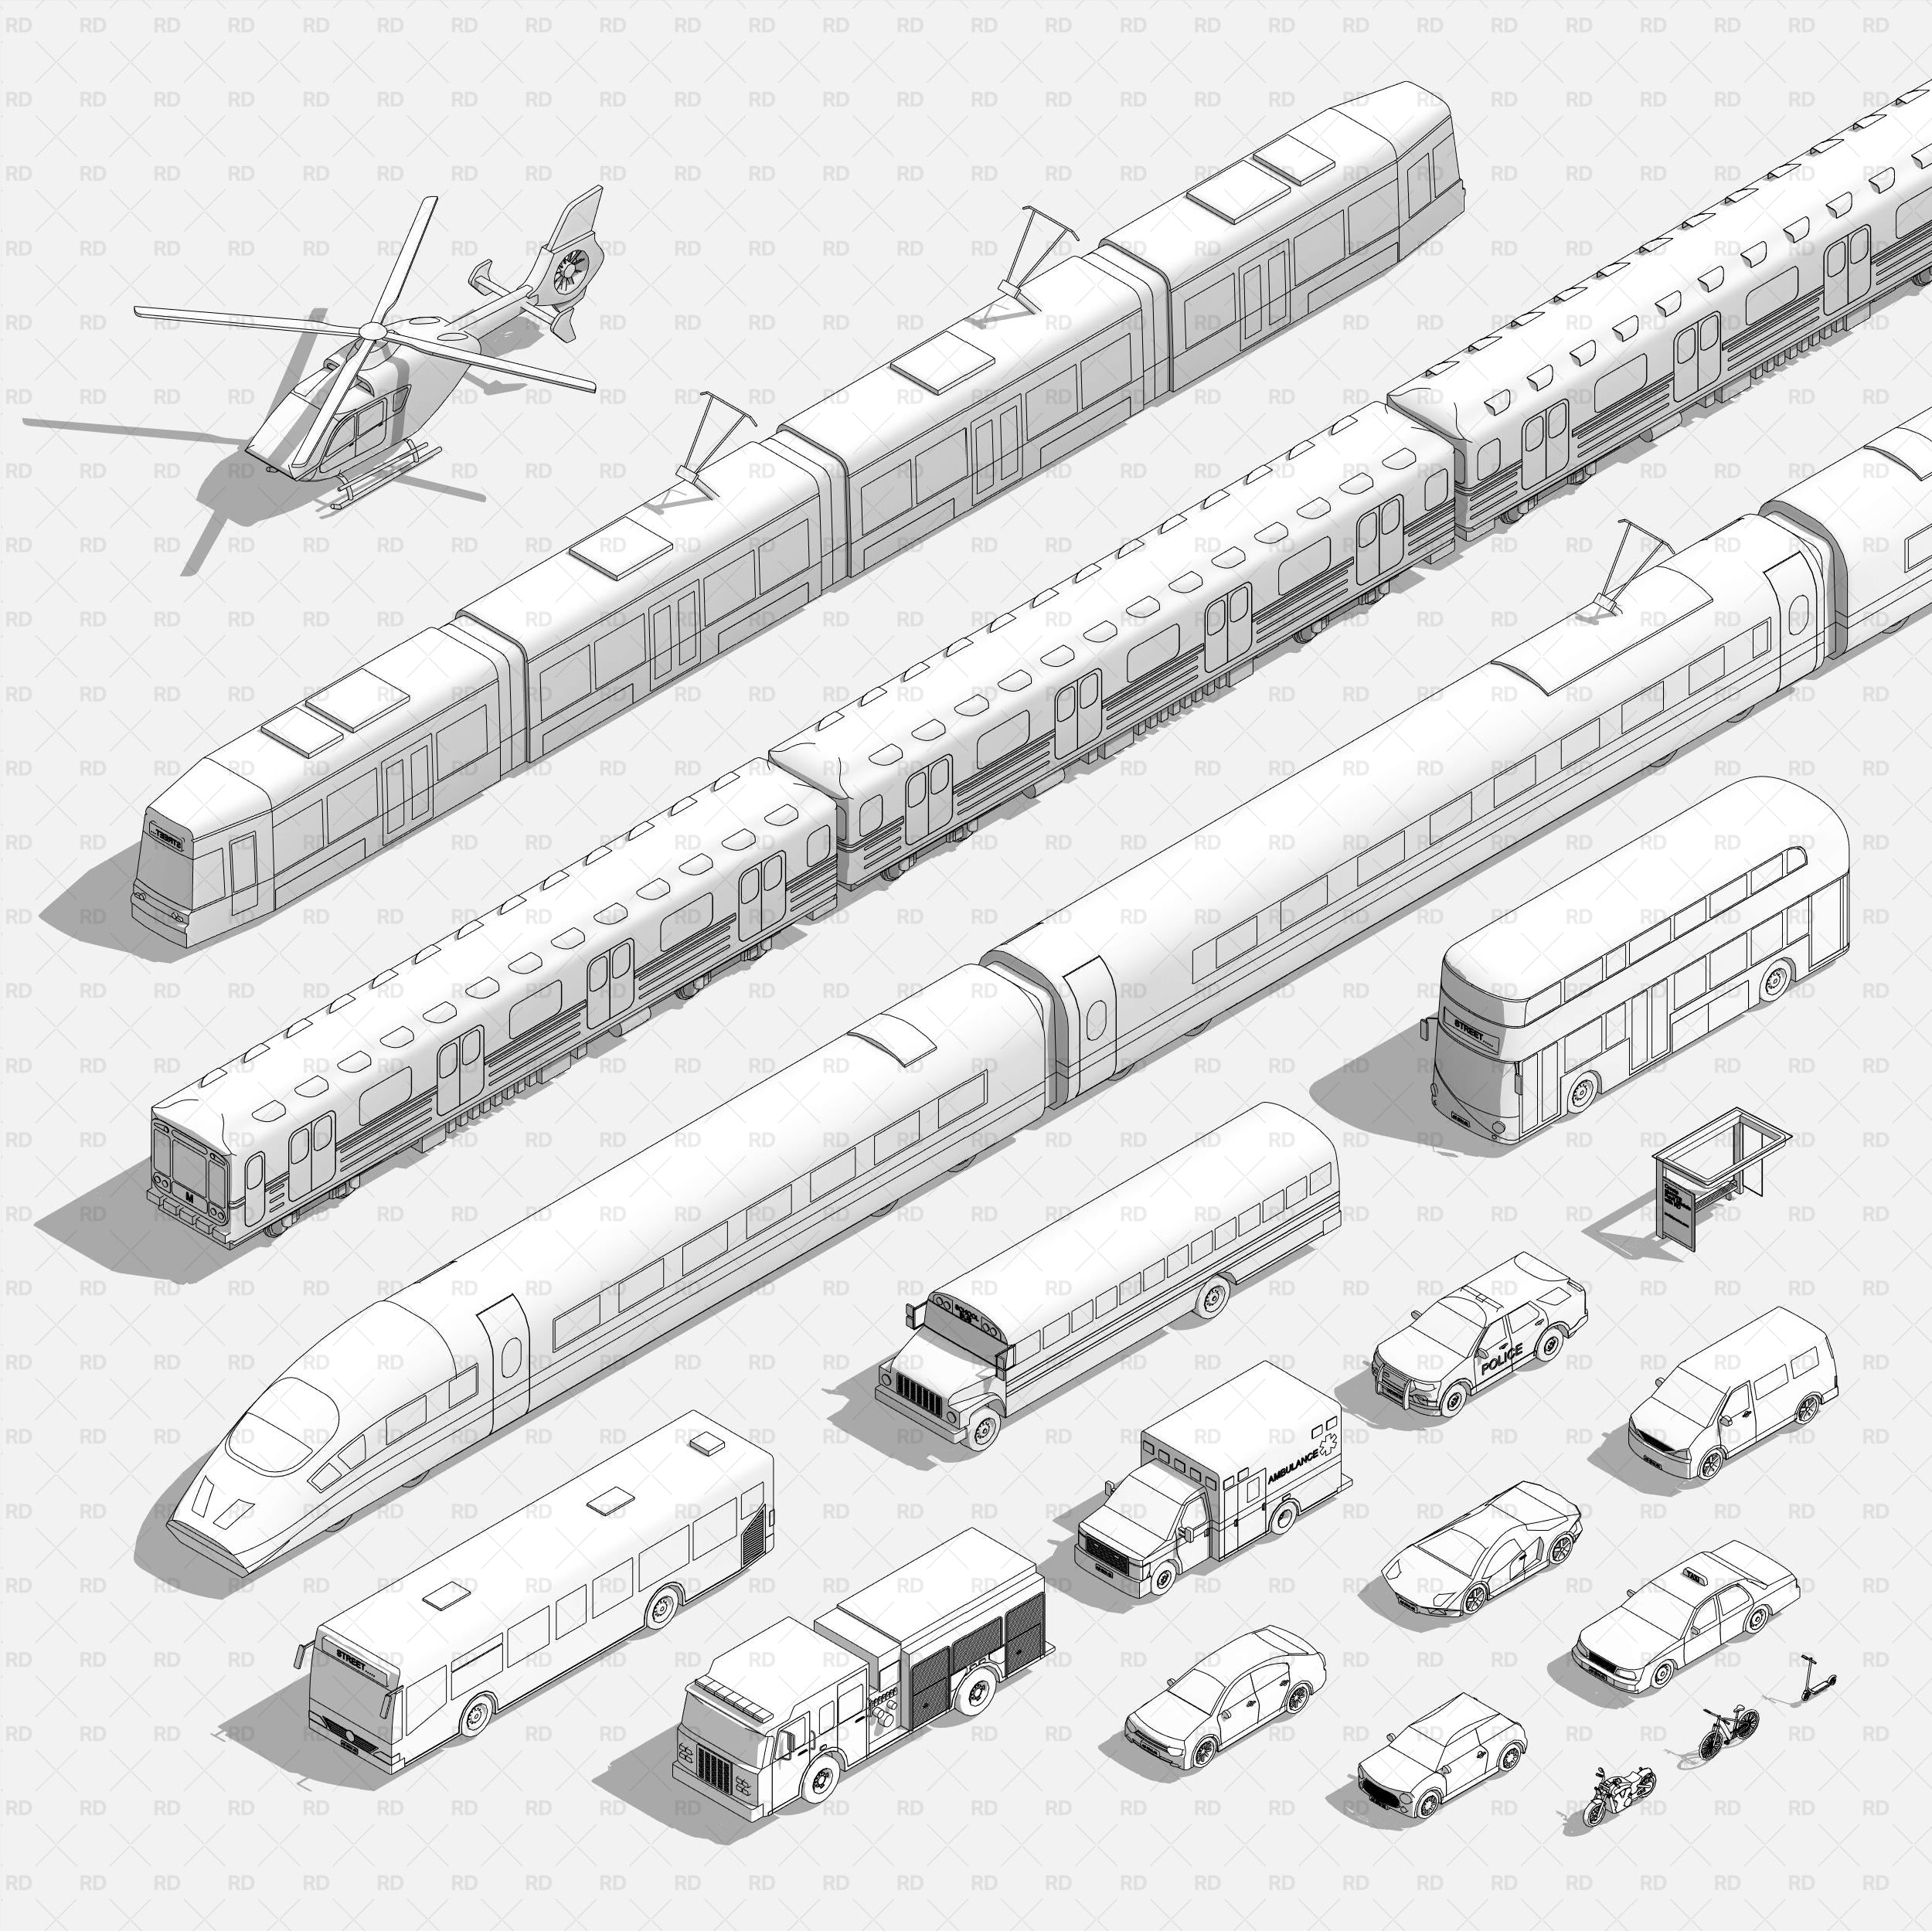 Revit-Super-Mega-Paket für Fahrzeuge und öffentliche Verkehrsmittel